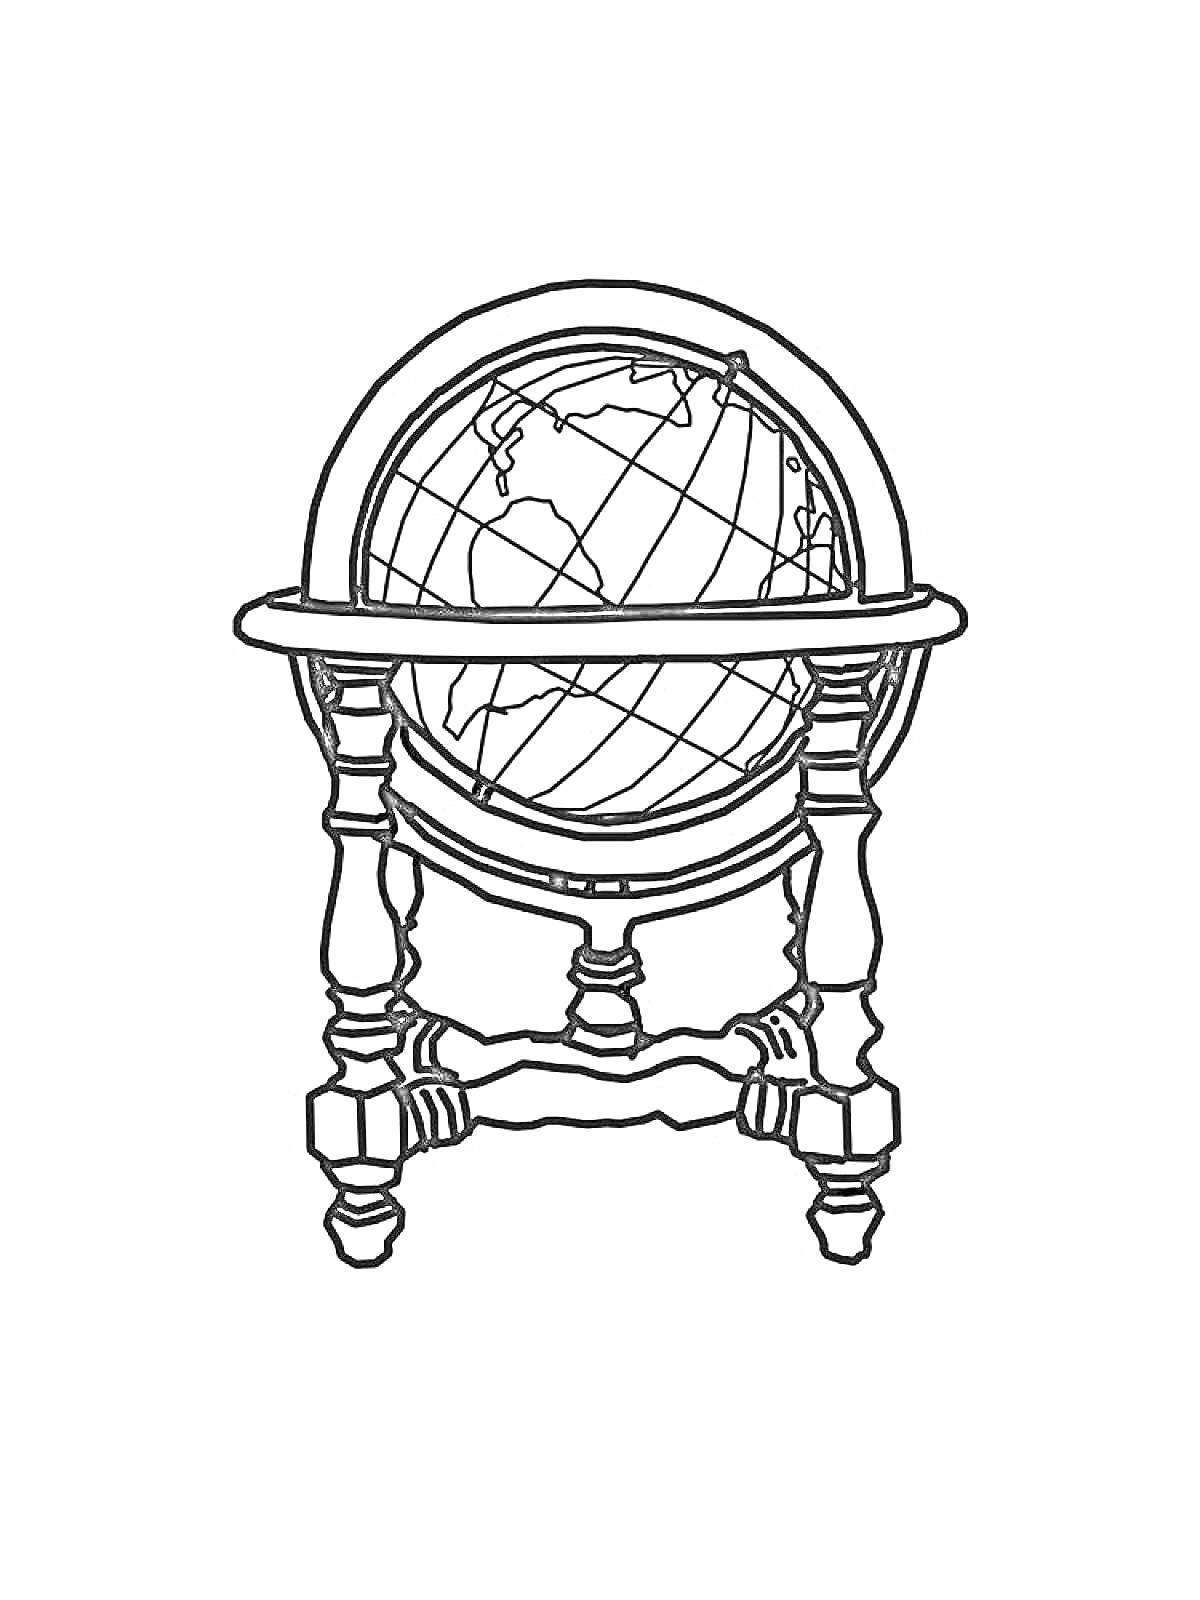 Глобус на подставке с тремя резными ножками